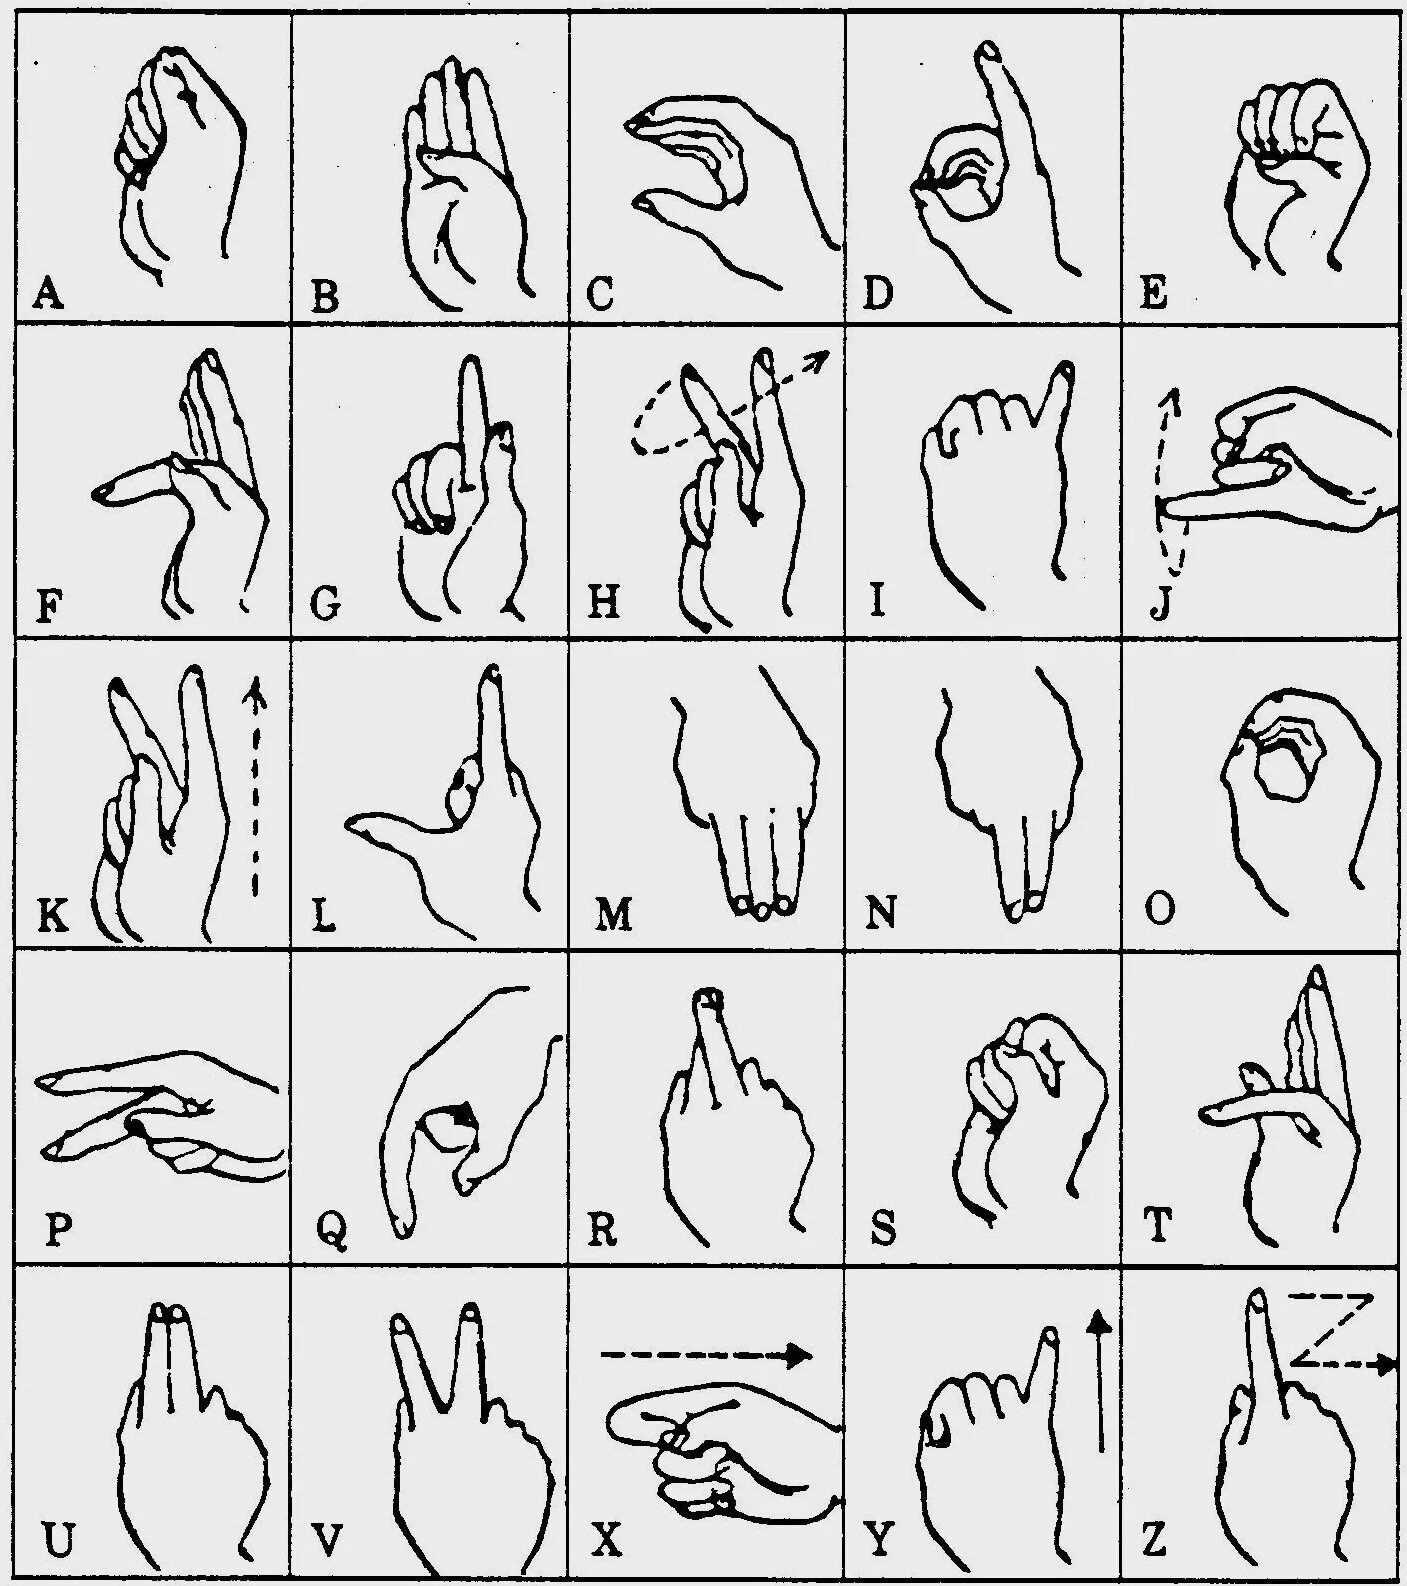 Дактильная Азбука глухих жесты. Дактильная Азбука язык алфавит английский язык. Английский жестовый язык дактиль. Дактильная Азбука глухих русский алфавит. Глухой на английском